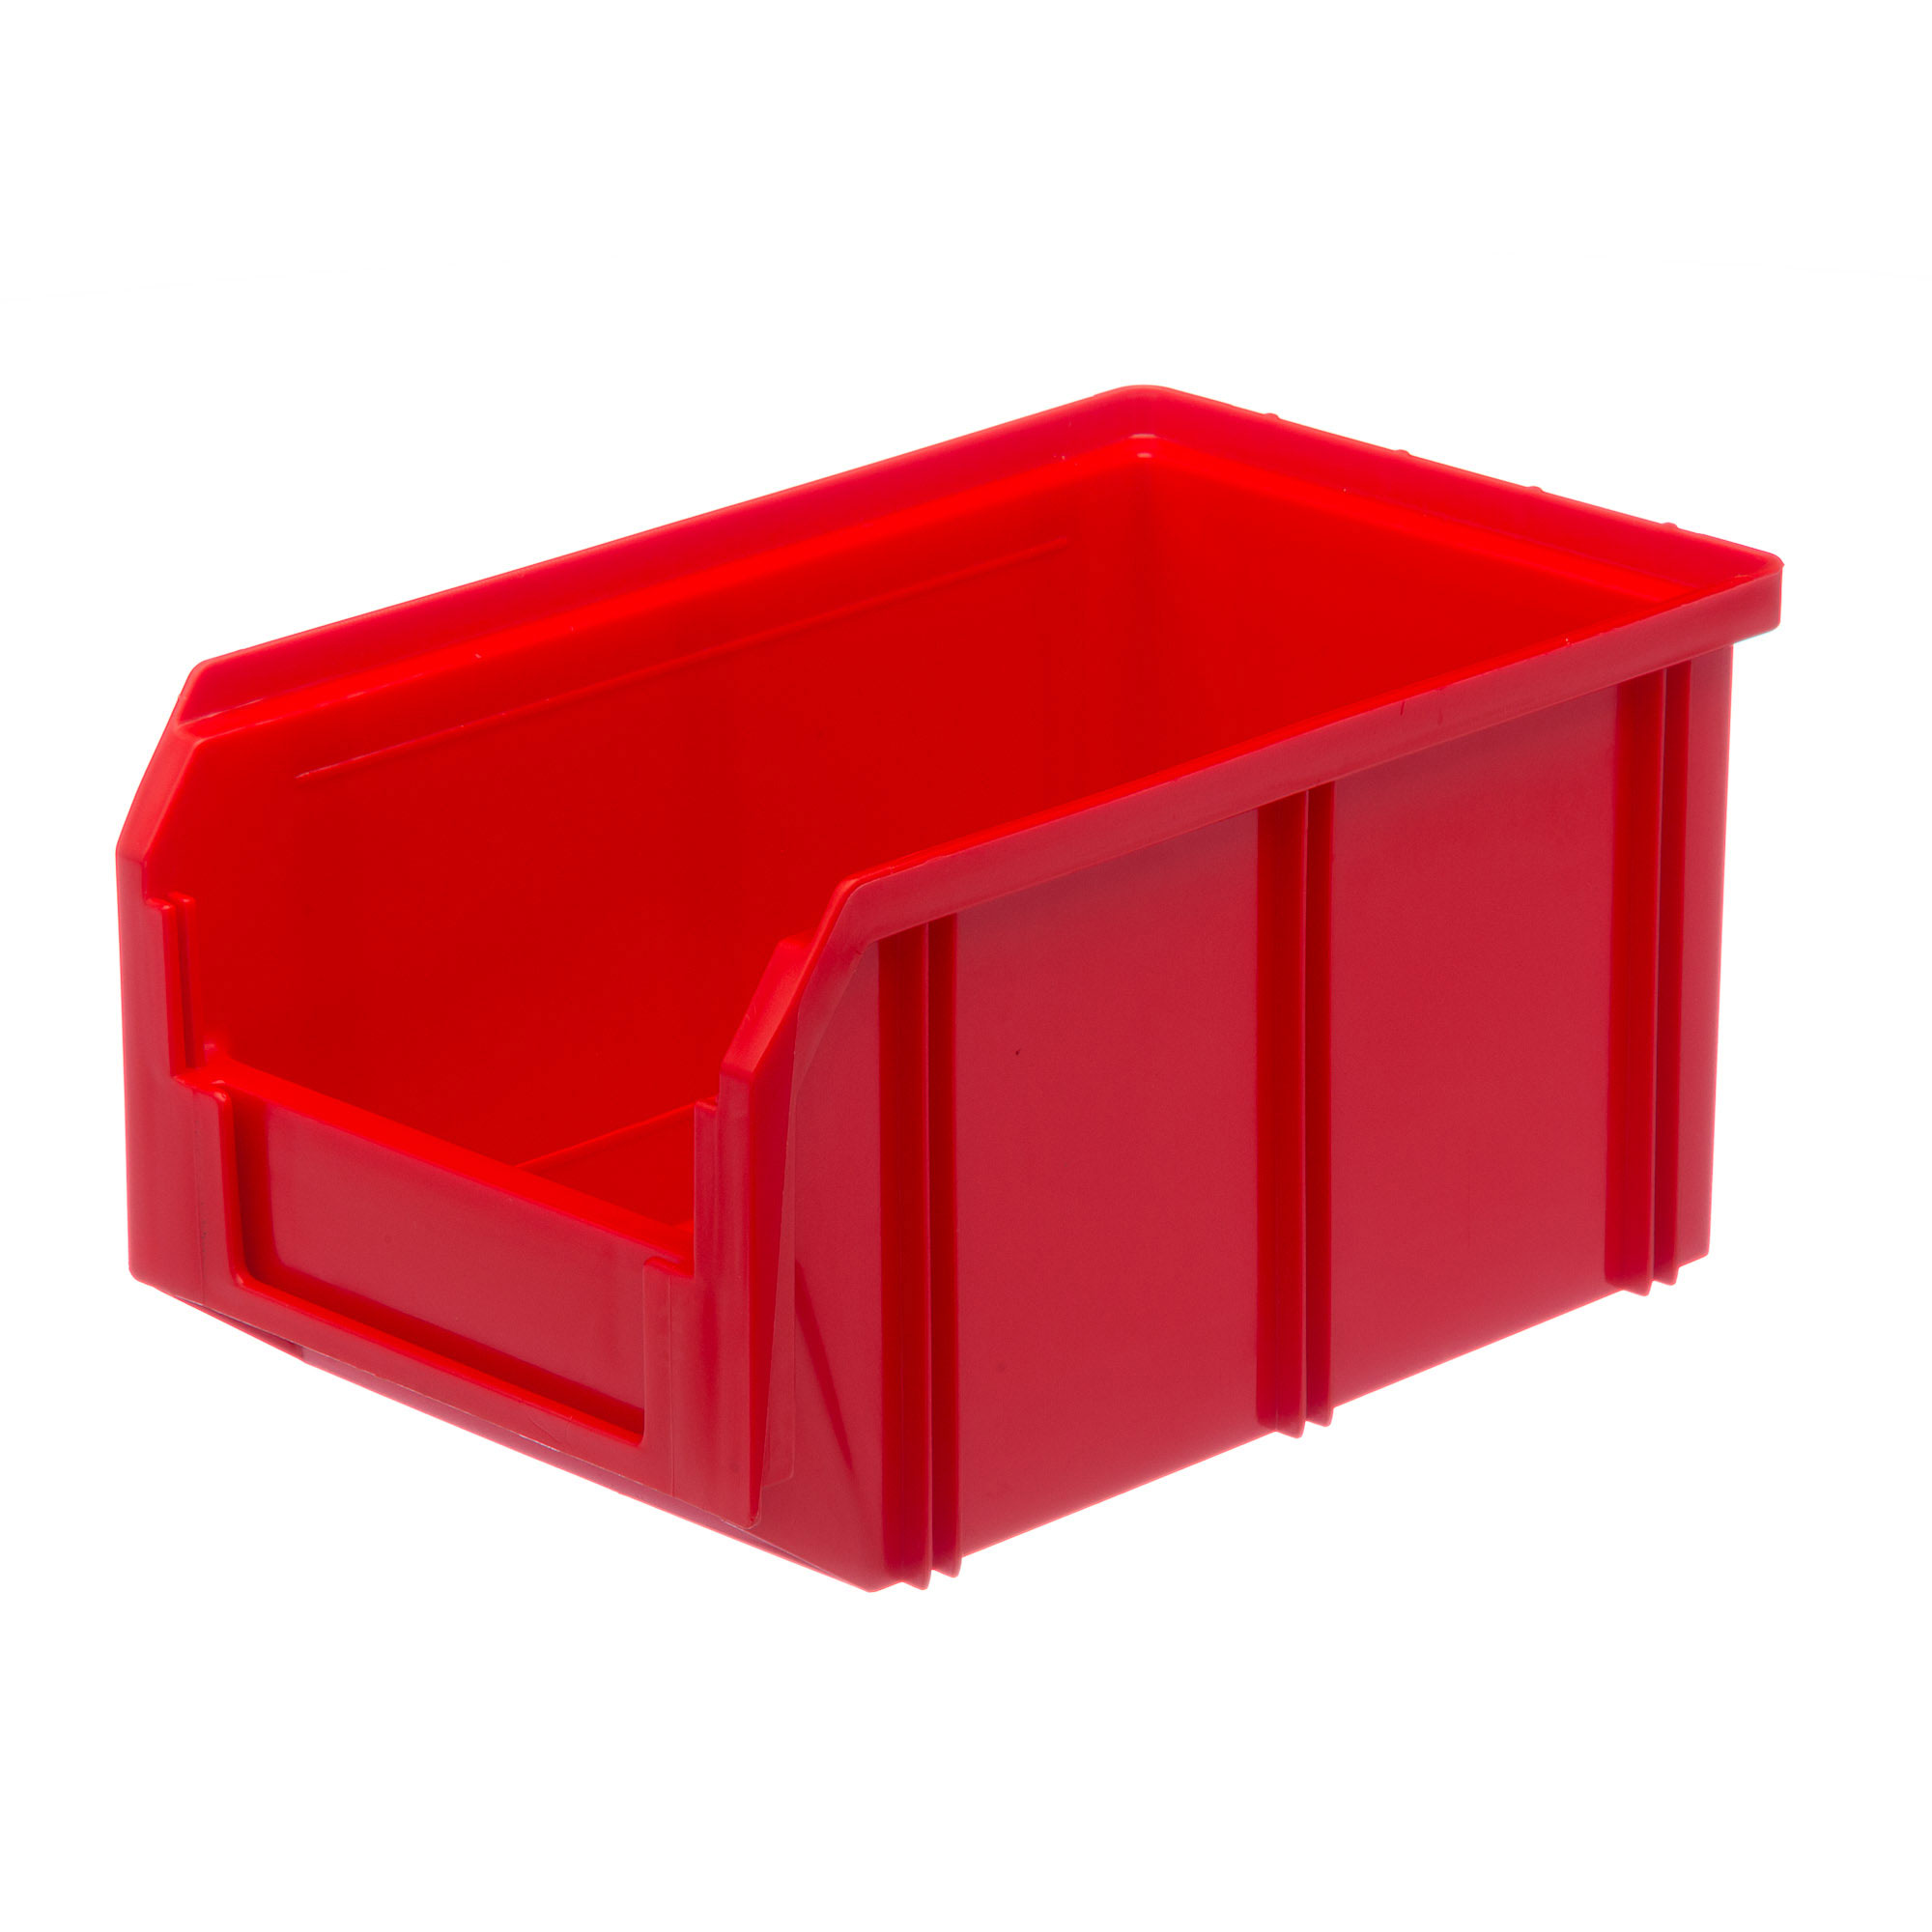 Пластиковый ящик Стелла-техник V-2-красный 234х149х120мм, 3,8 литра мельница пластиковый механизм 115 мл 45 80 гр красный